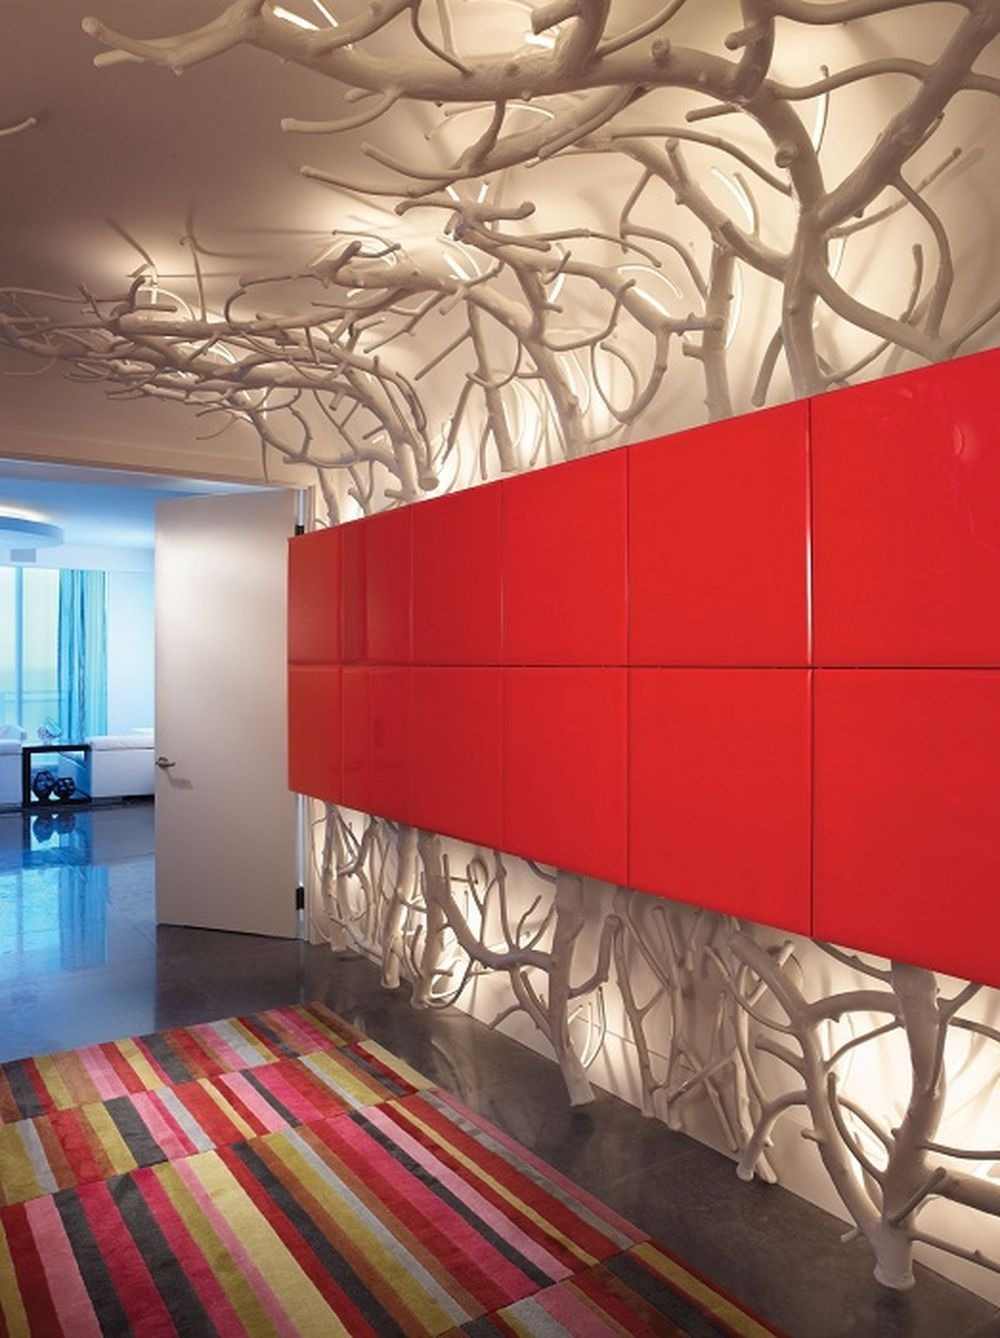 konstnärlig design och indirekt belysning i korridoren bakom röda väggpaneler och grenar